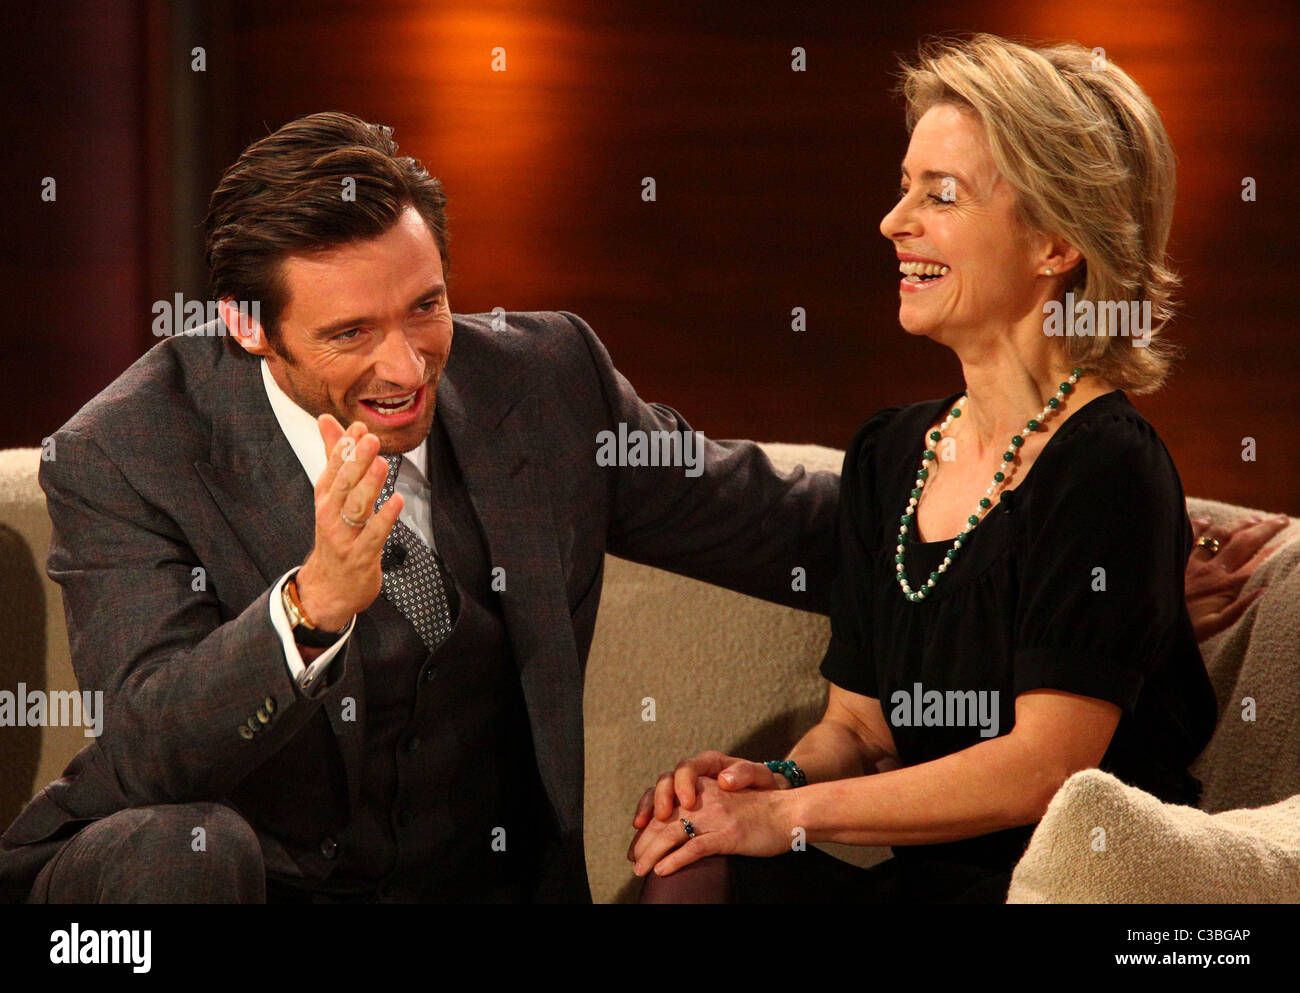 Hugh Jackman and Ursula von der Leyen on German TV show 'Wetten Stock